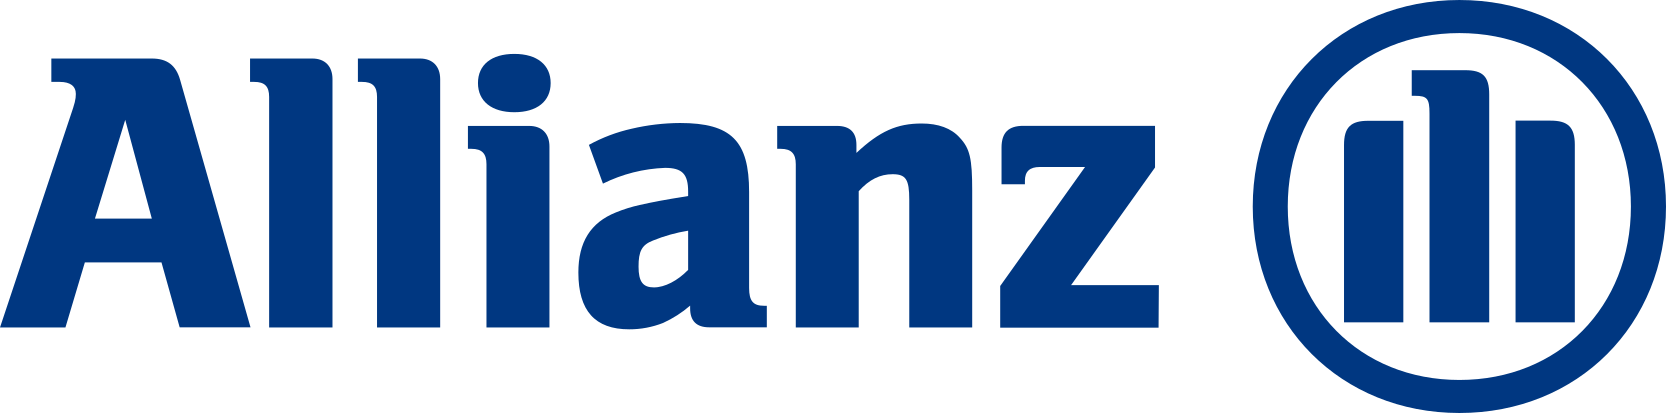 allianz-logo_1.png